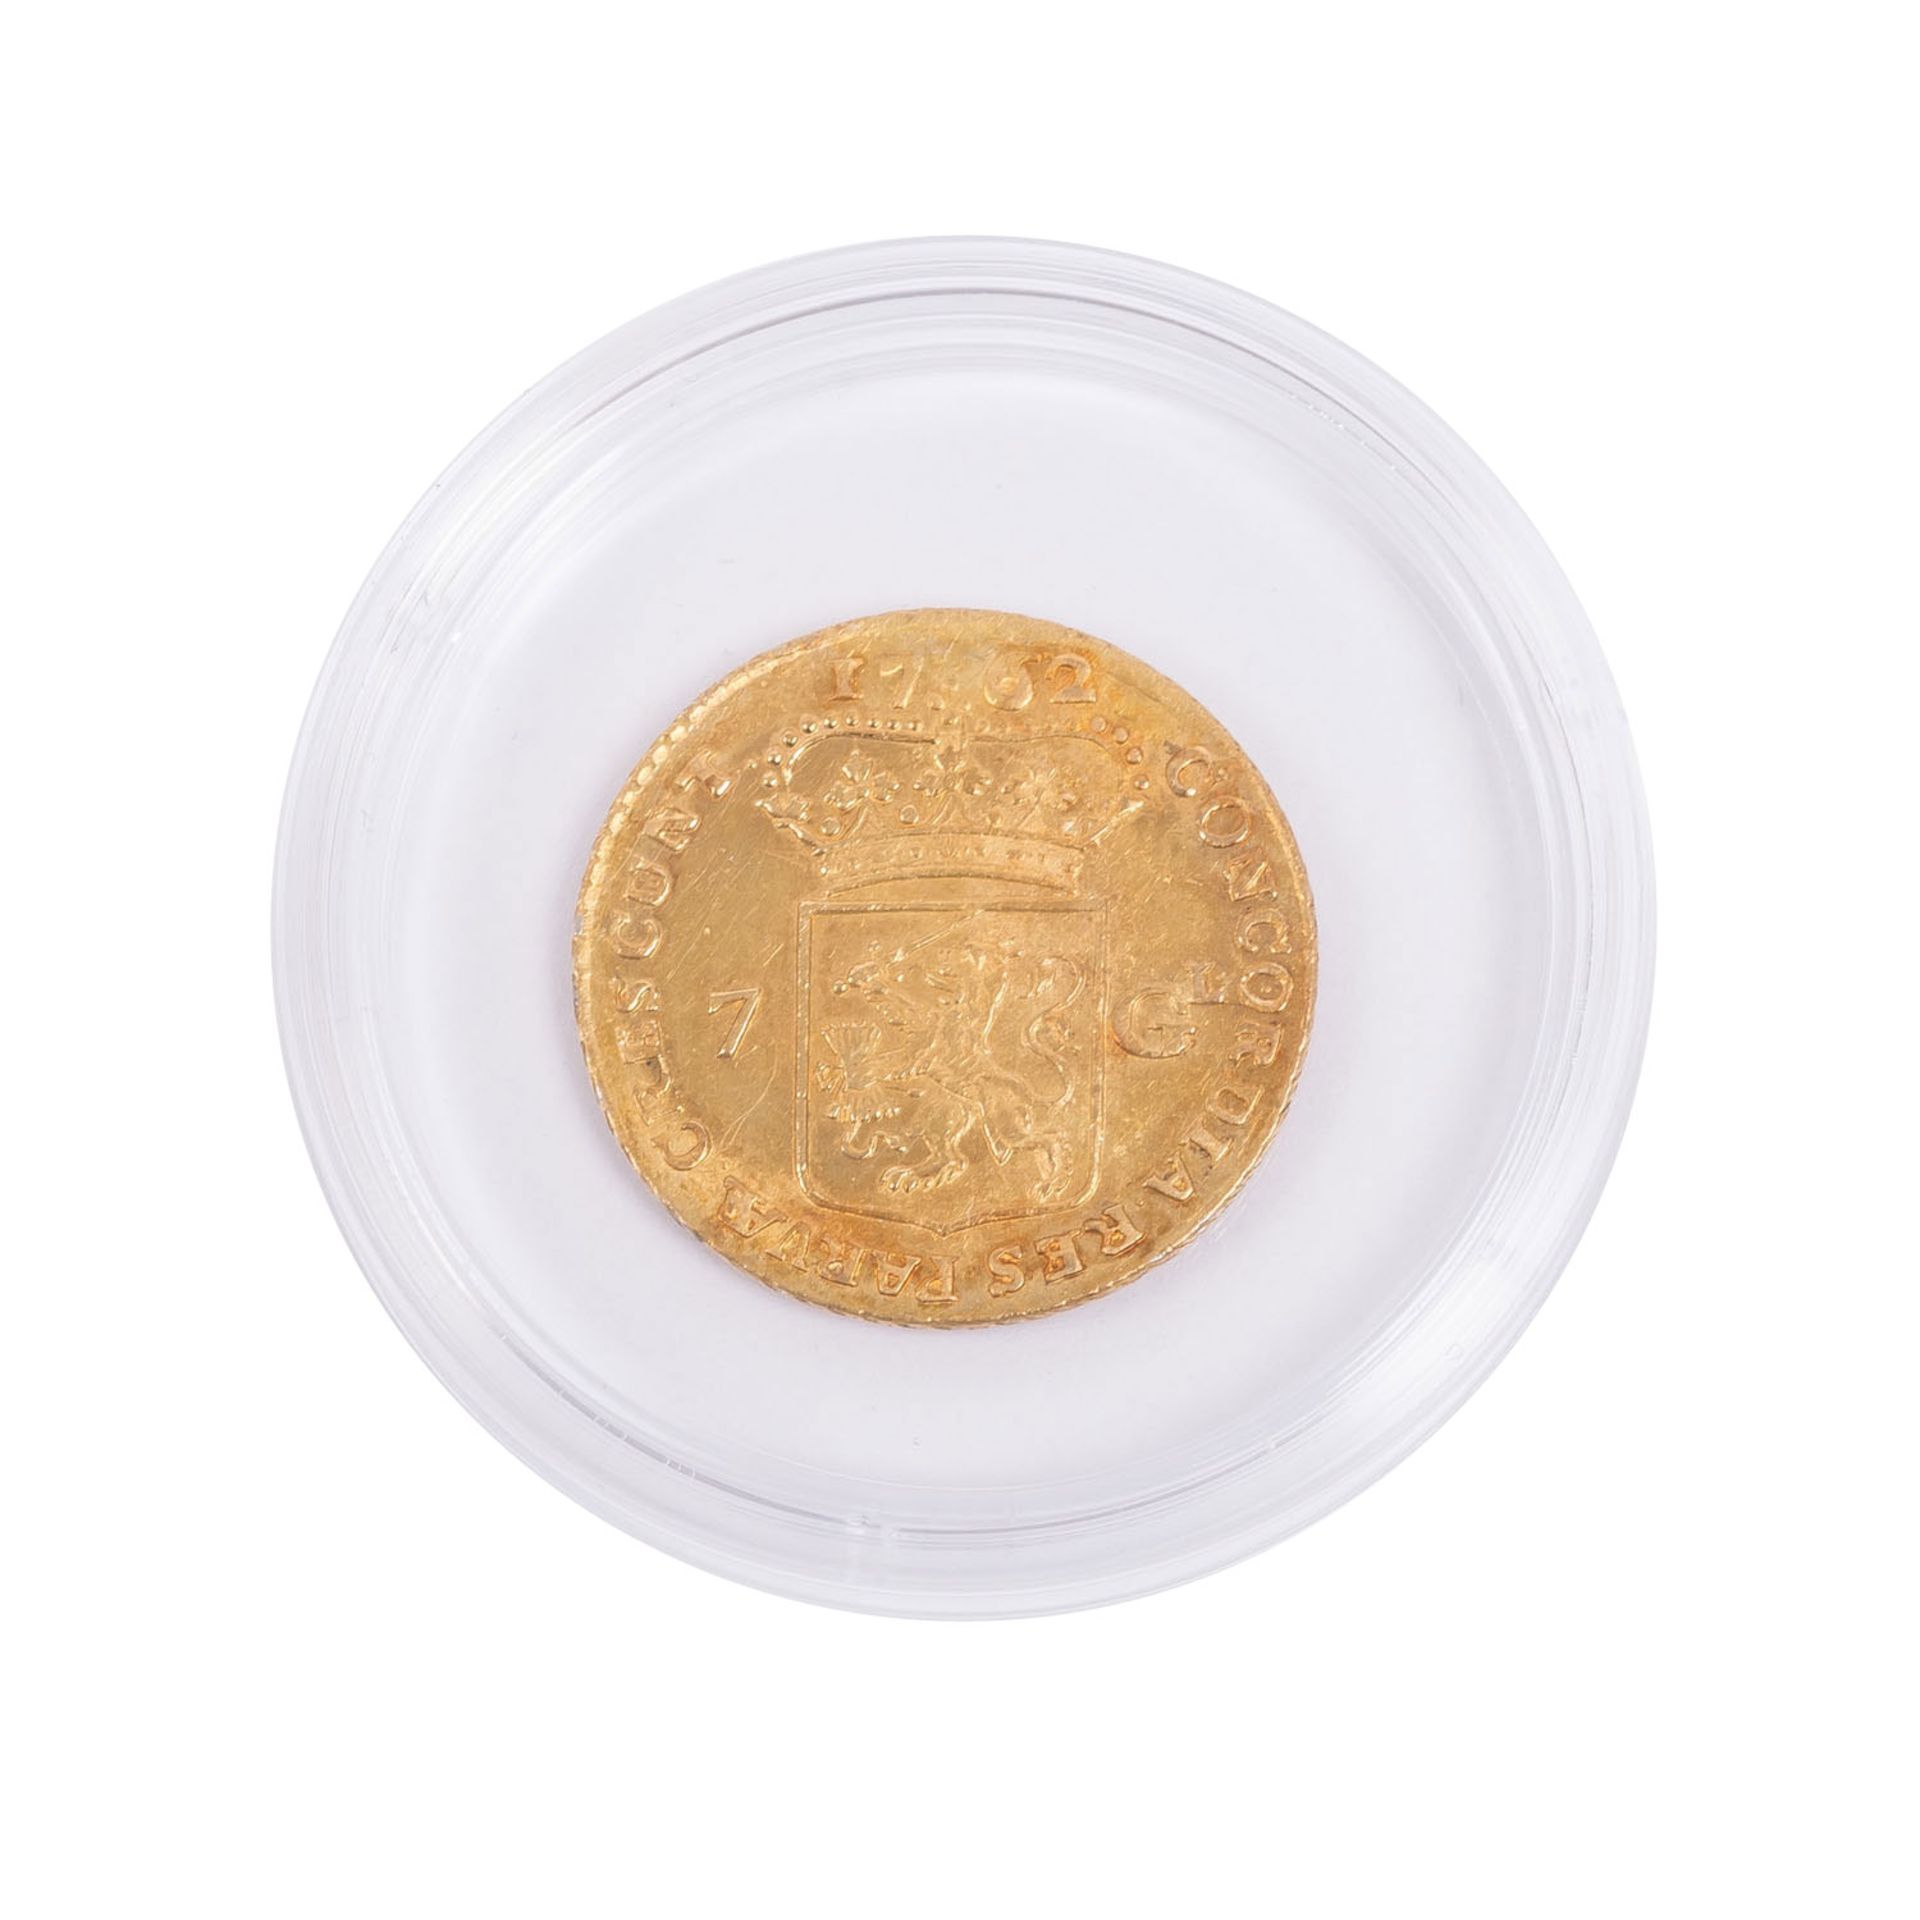 Niederlande/Gold - 7 Gulden 1762, - Image 2 of 2